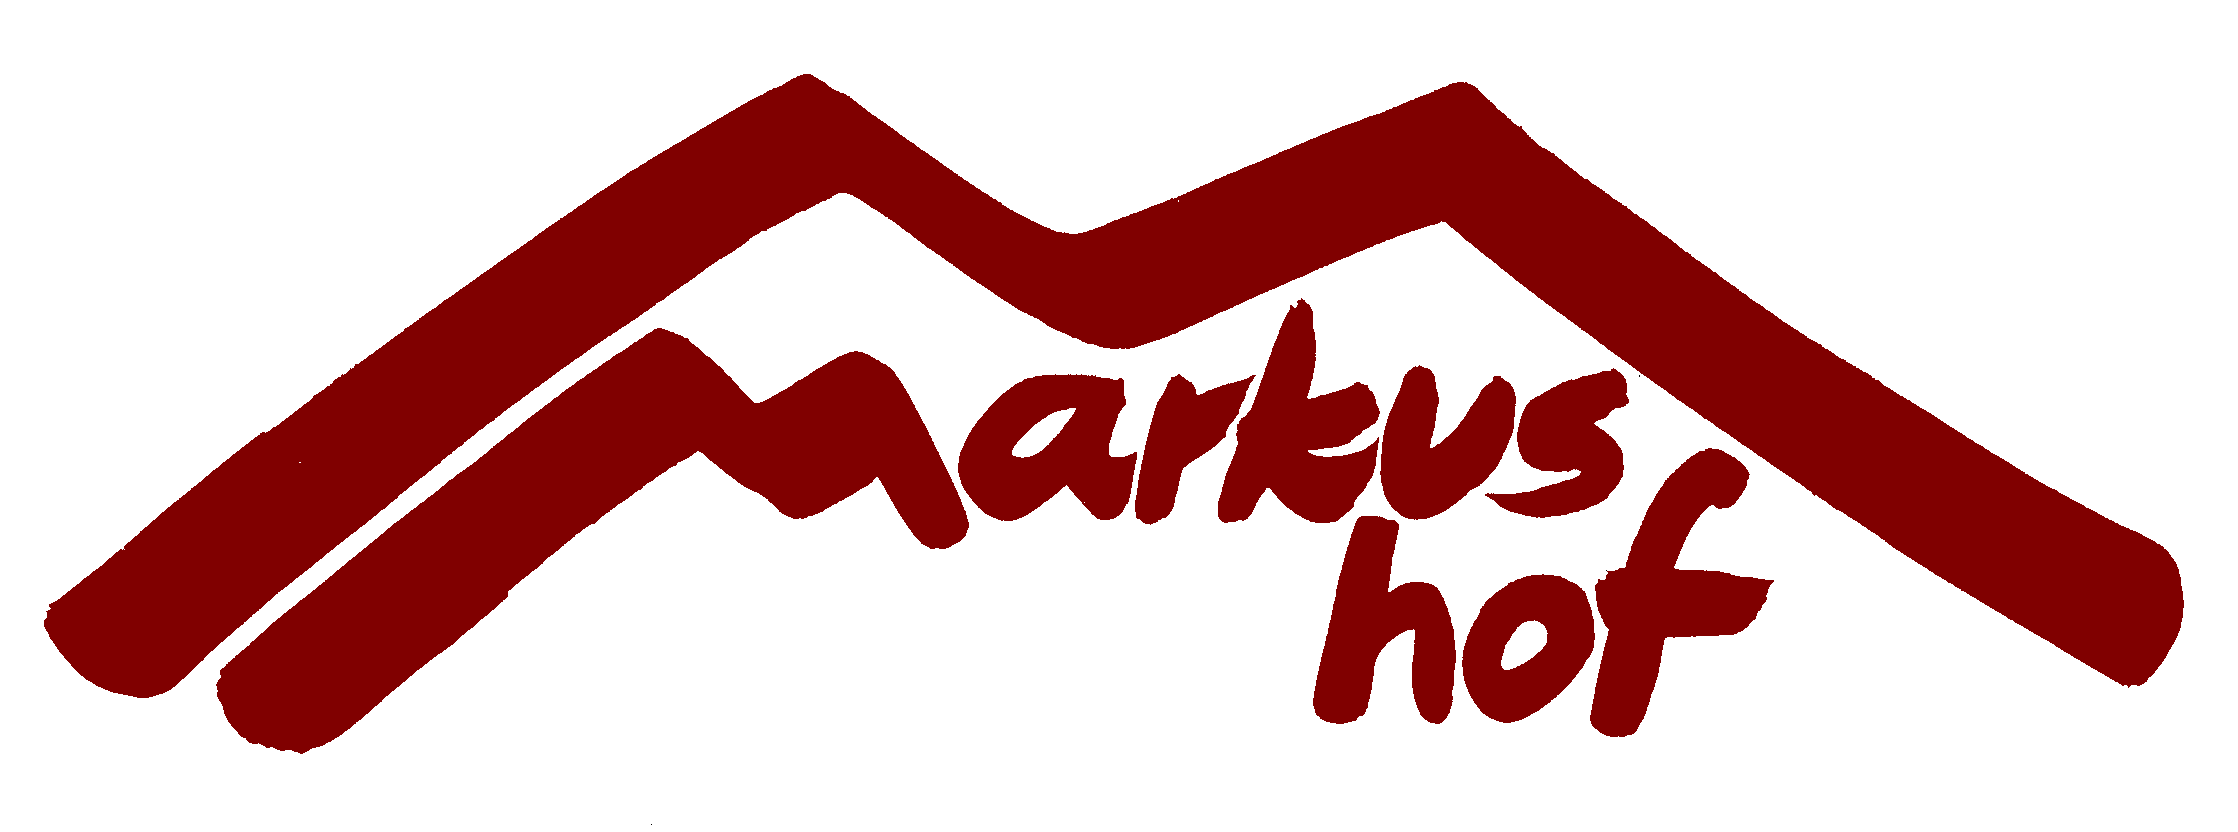 Logo Markushof: Ein rotes M bildet ein Dach, darunter der Schriftzug Markushof.